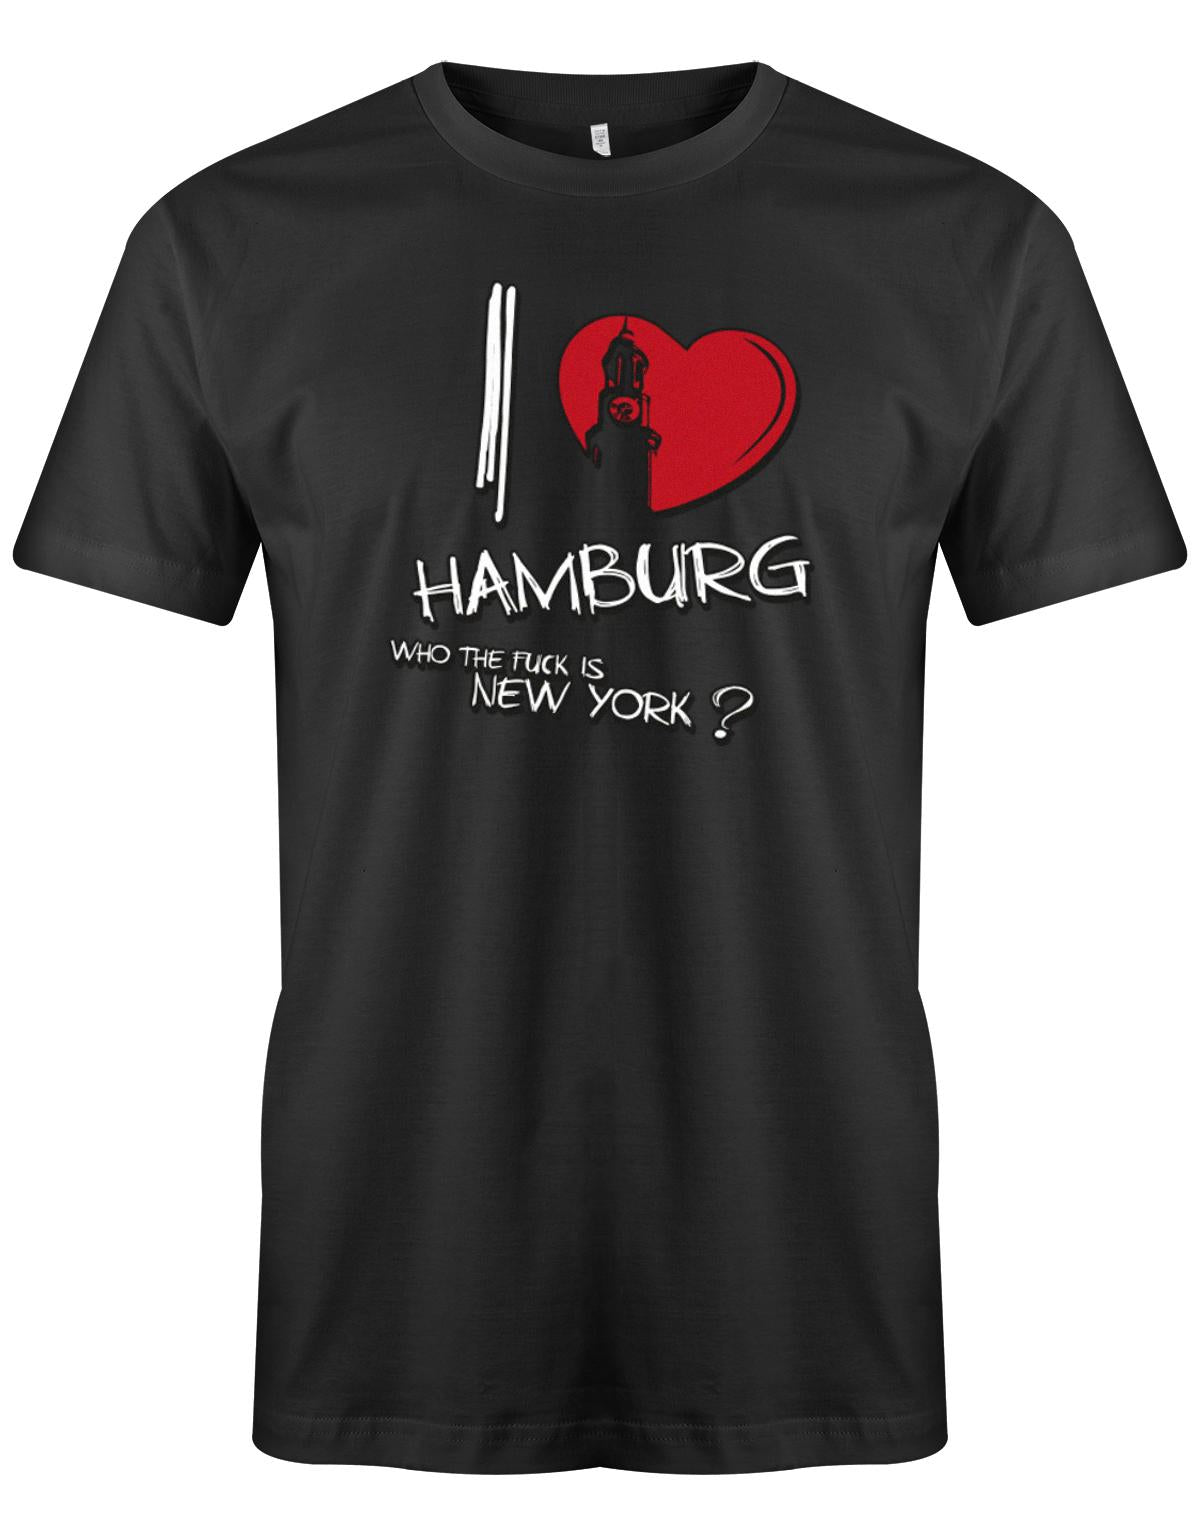 I-Love-Hamburg-wahrzeichen-Who-the-fuck-is-New-York-Hamburg-Shirt-Herren-SChwarz